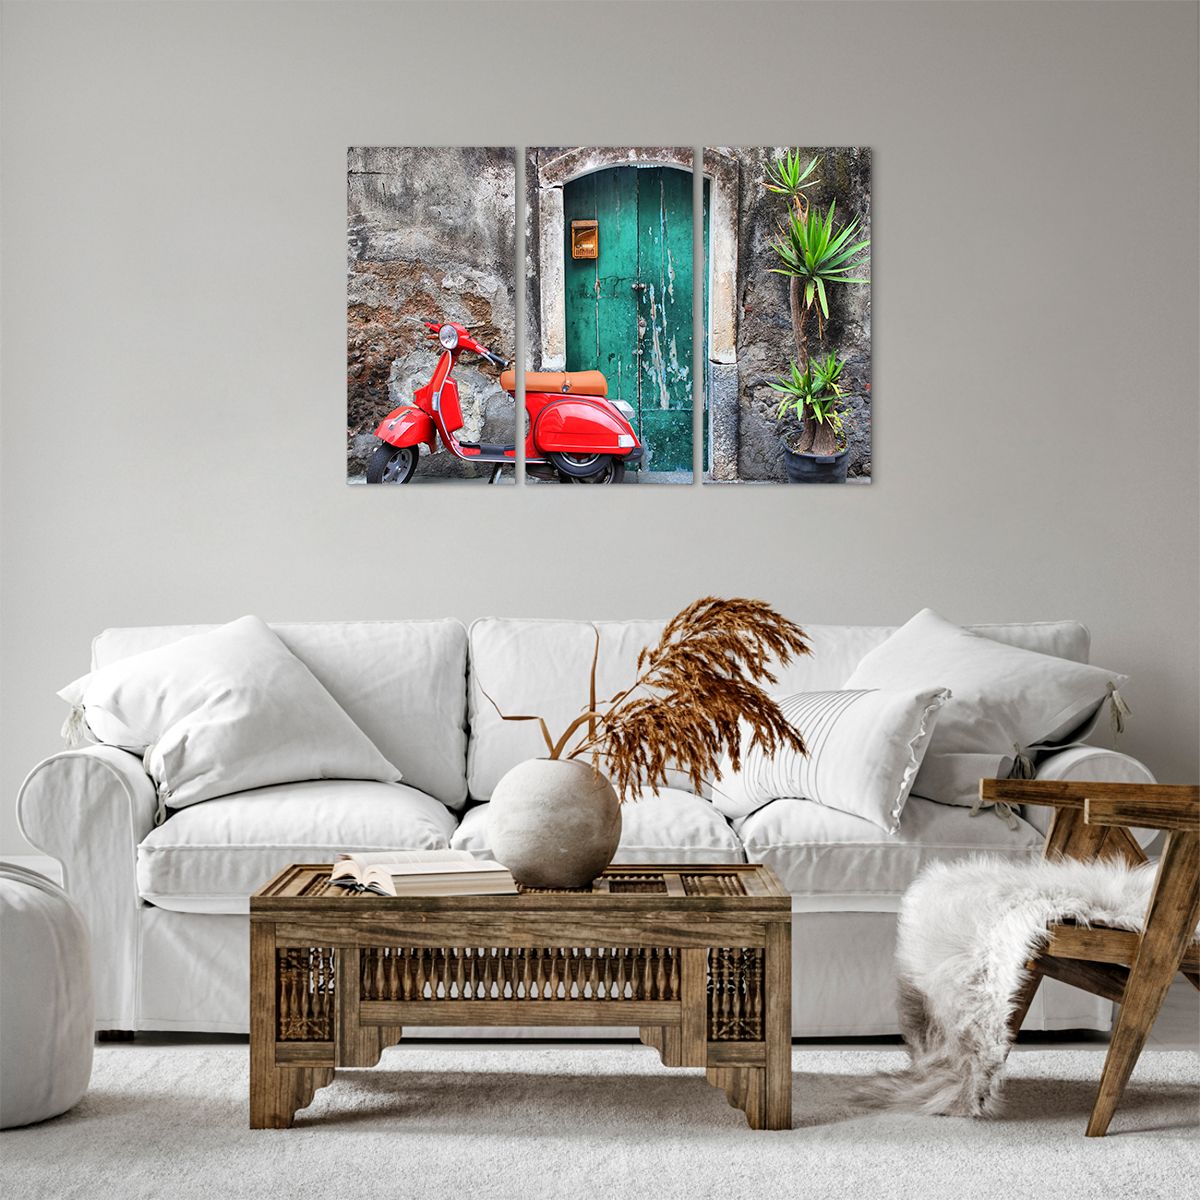 Bild auf Leinwand Automobil, Bild auf Leinwand Roller, Bild auf Leinwand Italien, Bild auf Leinwand Rotes Motorrad, Bild auf Leinwand Geheimnisvolle Tür